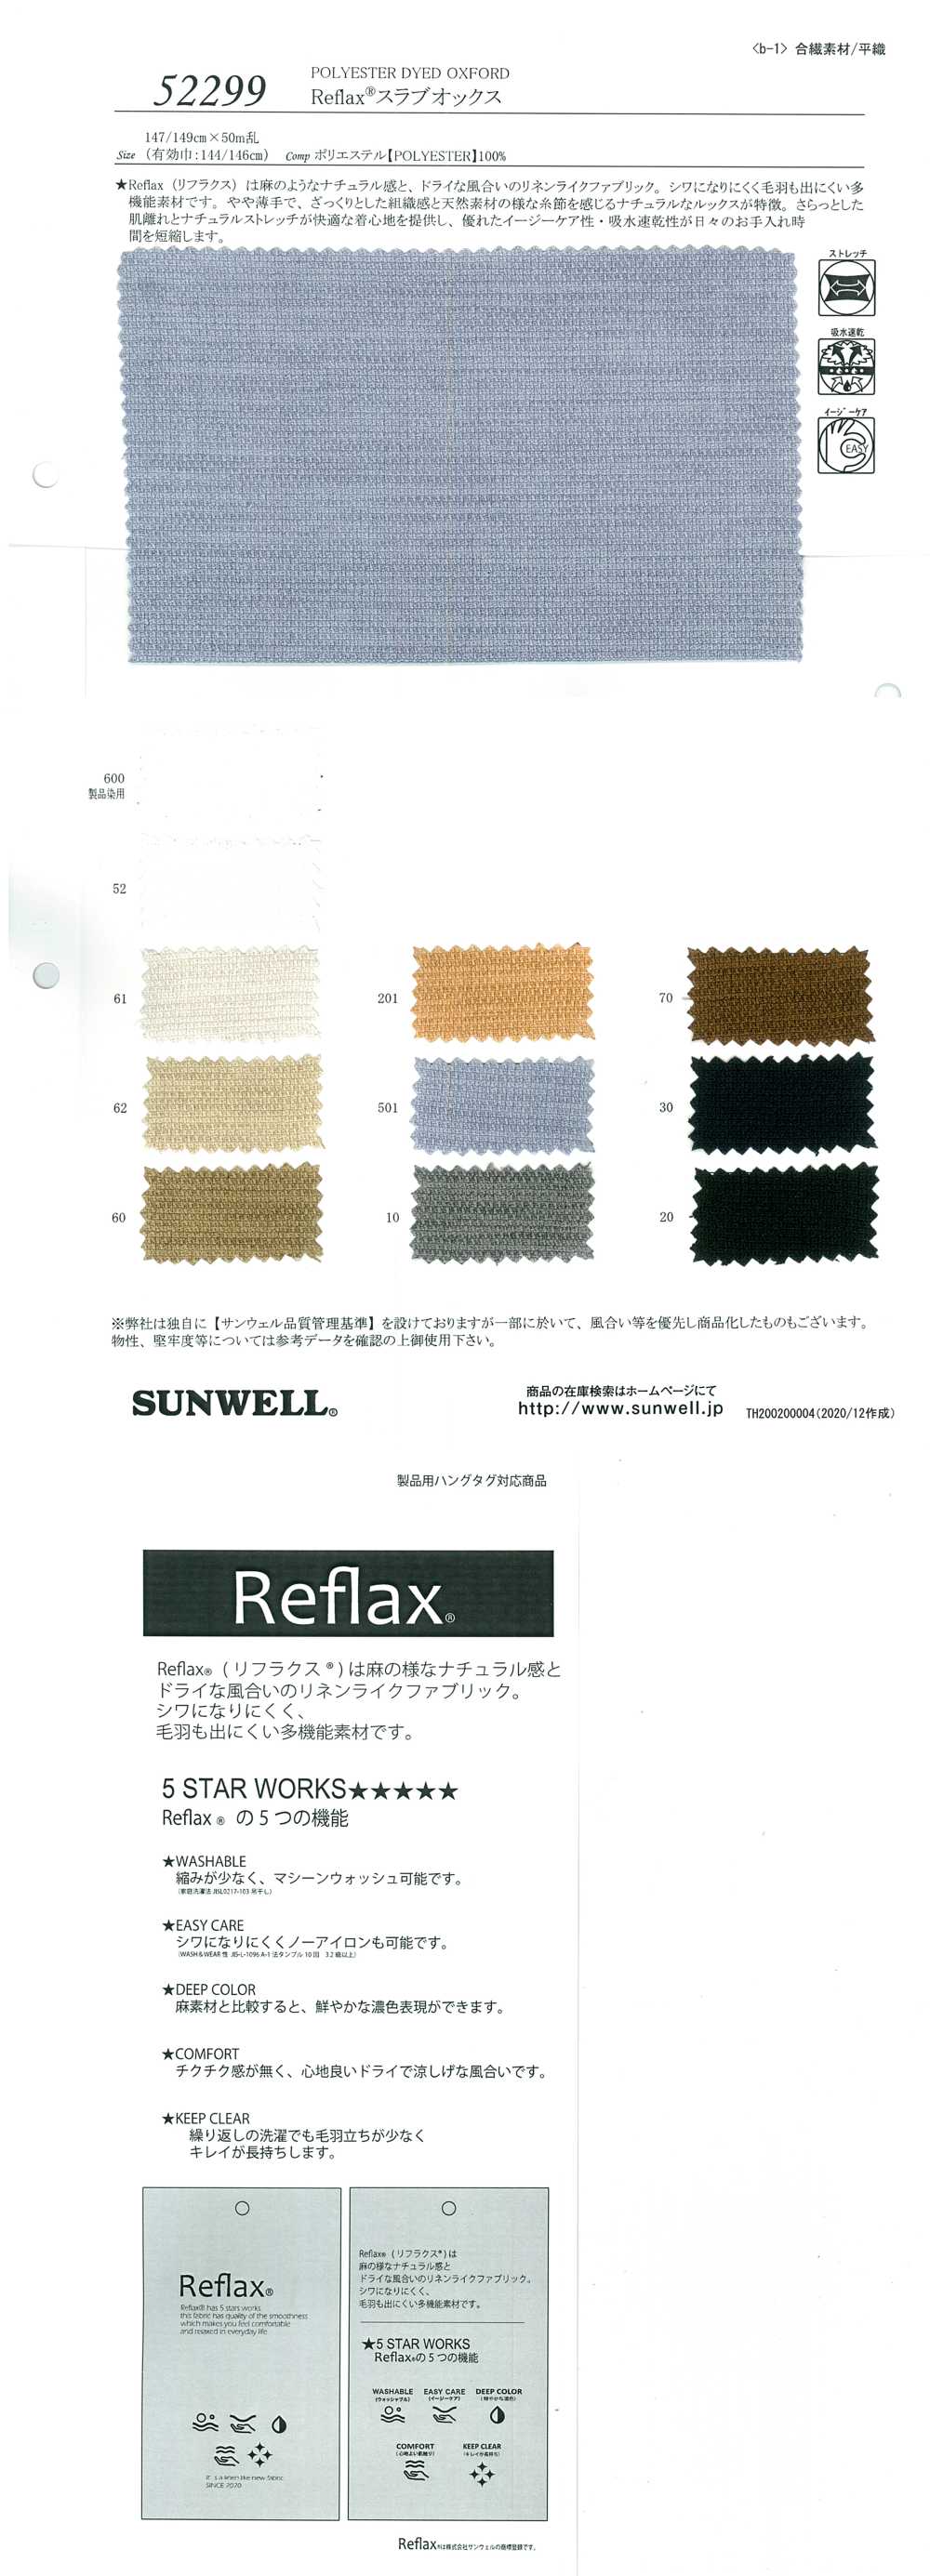 52299 Reflax(R) Losa Oxford[Fabrica Textil] SUNWELL